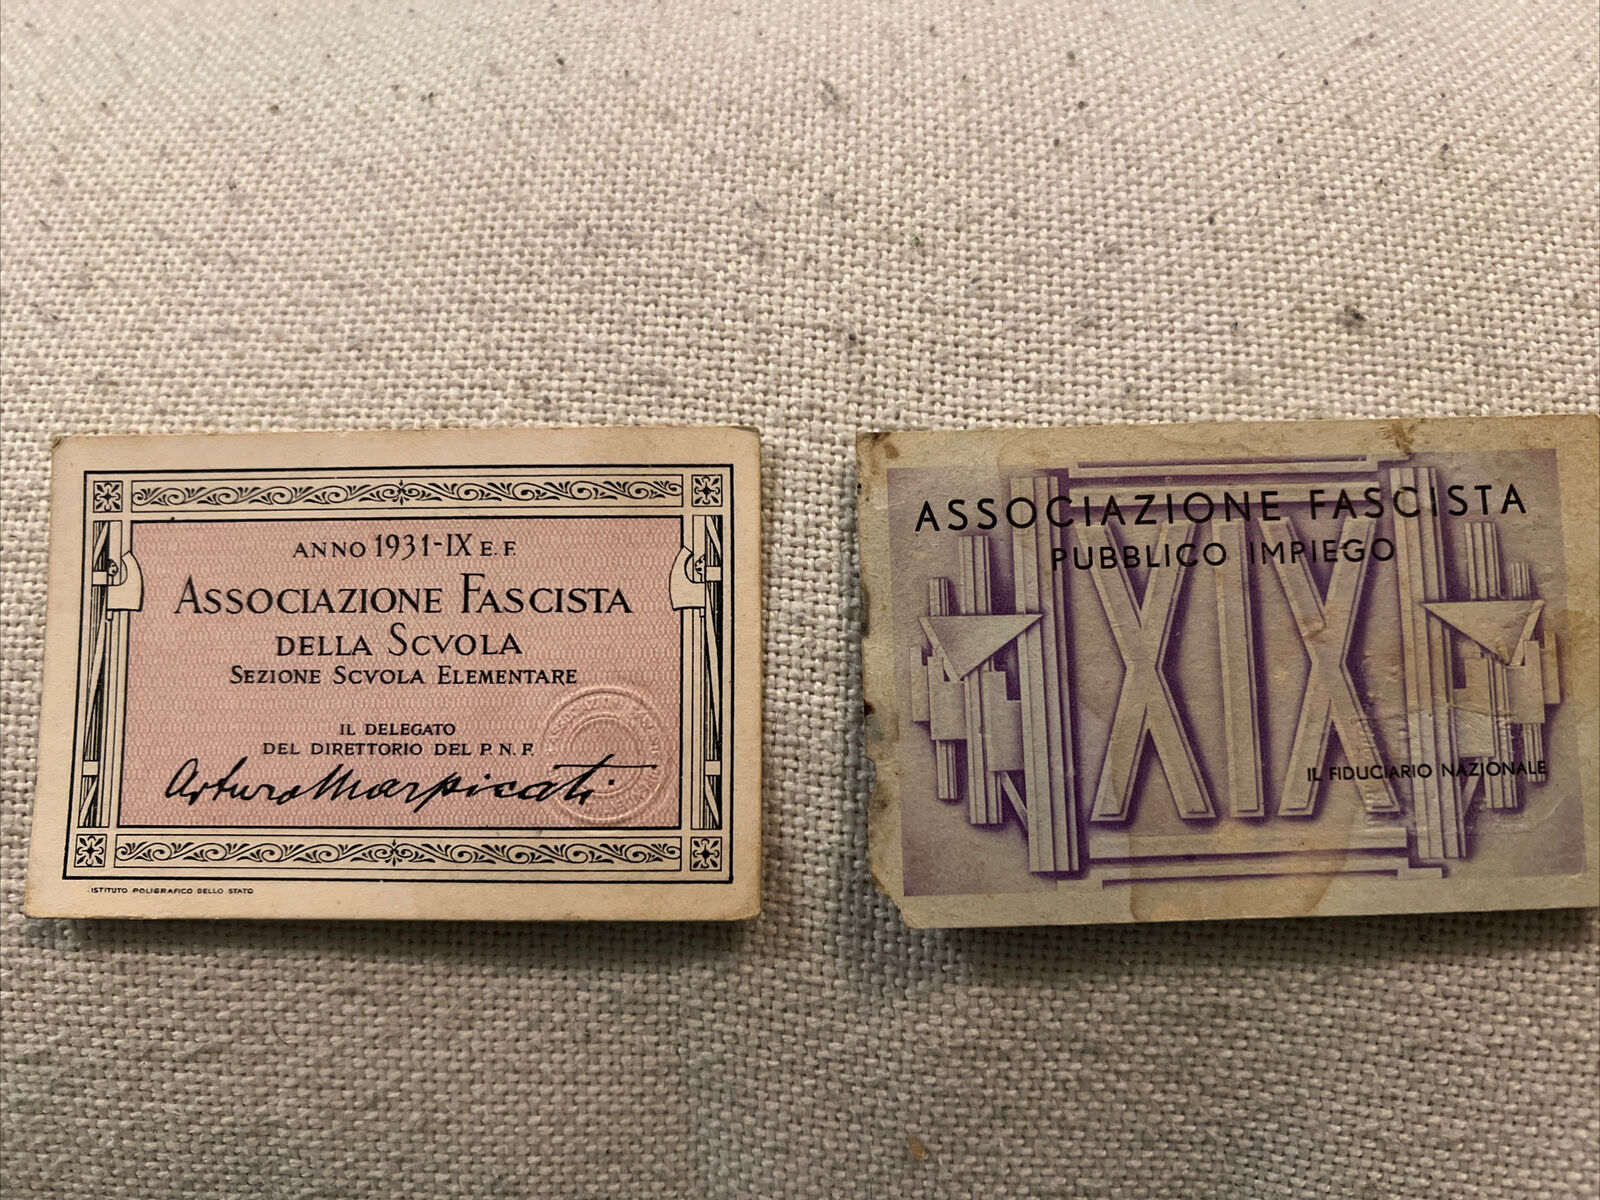 ITALY 2 ORIGINAL FASCIST 1931 ERA MEMBERSHIP ID CARDS